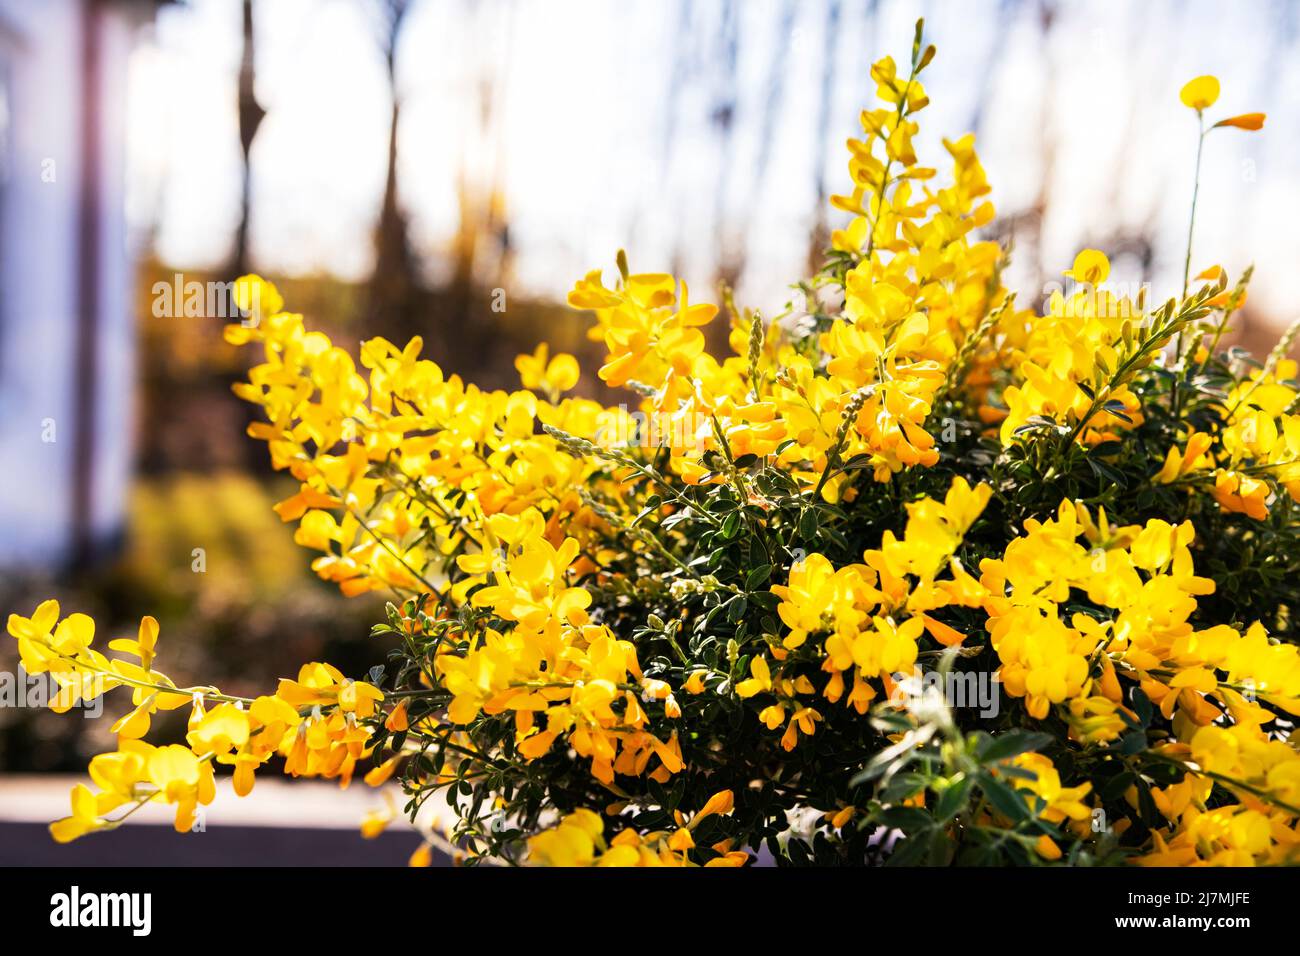 Gelbe Laburnum blüht im Sonnenlicht. Gelbe Trauben von Laburnum alpinium Blumen in einem Blumenladen zum Verkauf. Wachsende Bohne blüht in Töpfen in einem Gewächshaus Stockfoto